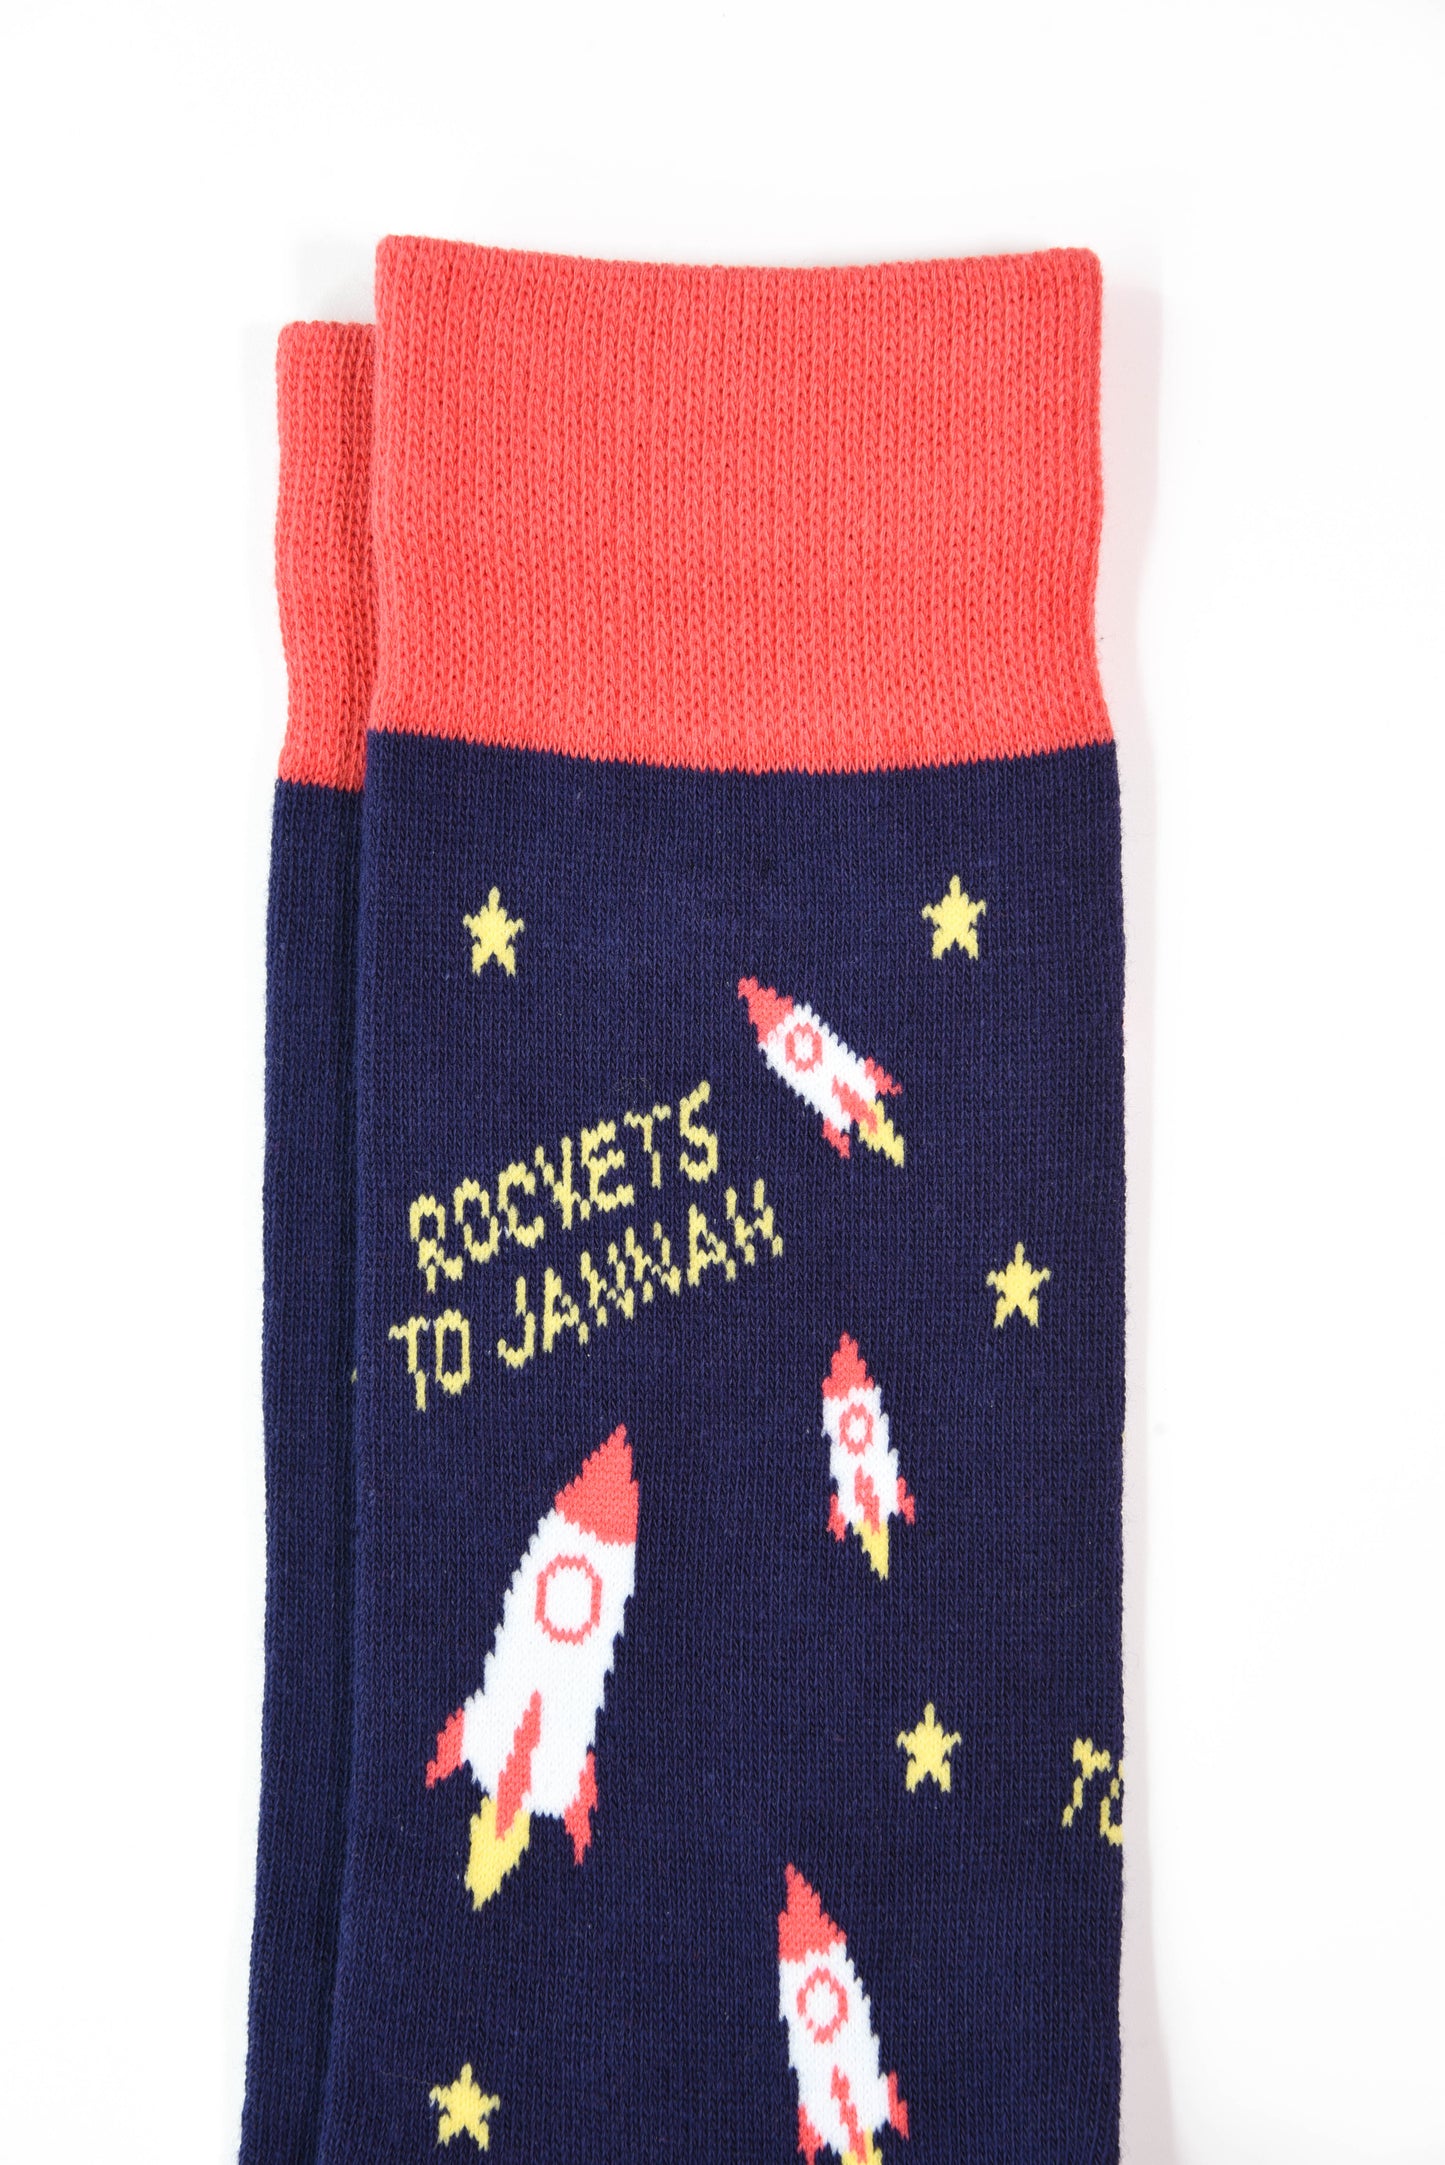 Rockets to Jannah